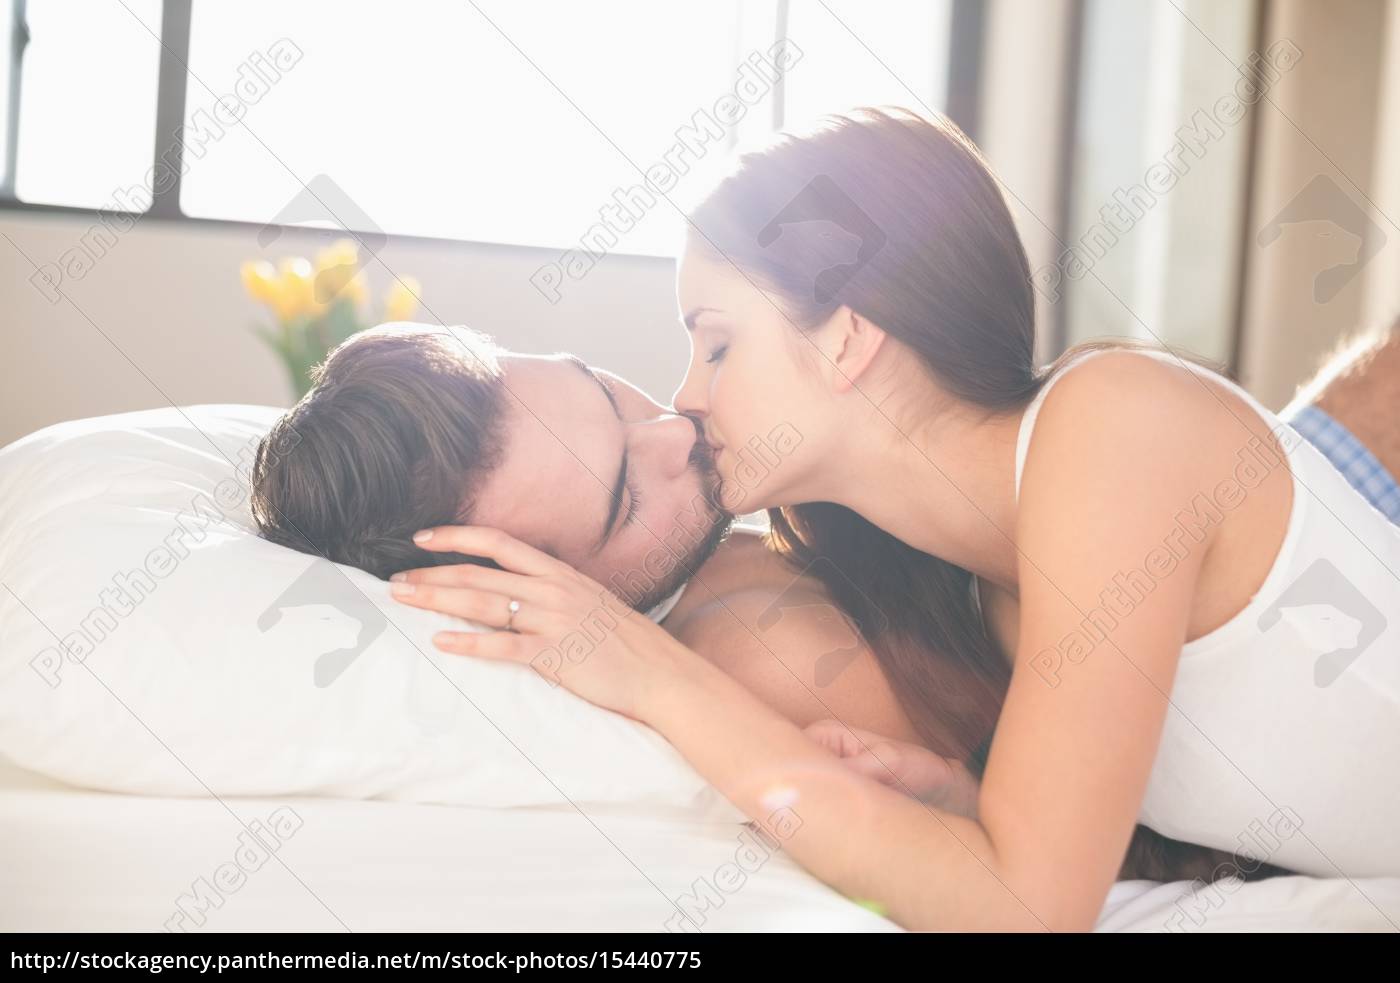 23+ frisch Vorrat Küssen Im Bett - Ist Knutschen Am Morgen Sexy Oder Eklig Schweizer Illustrierte / Den nacken eines jungen zu küssen ist ein weiterer toller weg, ihn anzumachen.